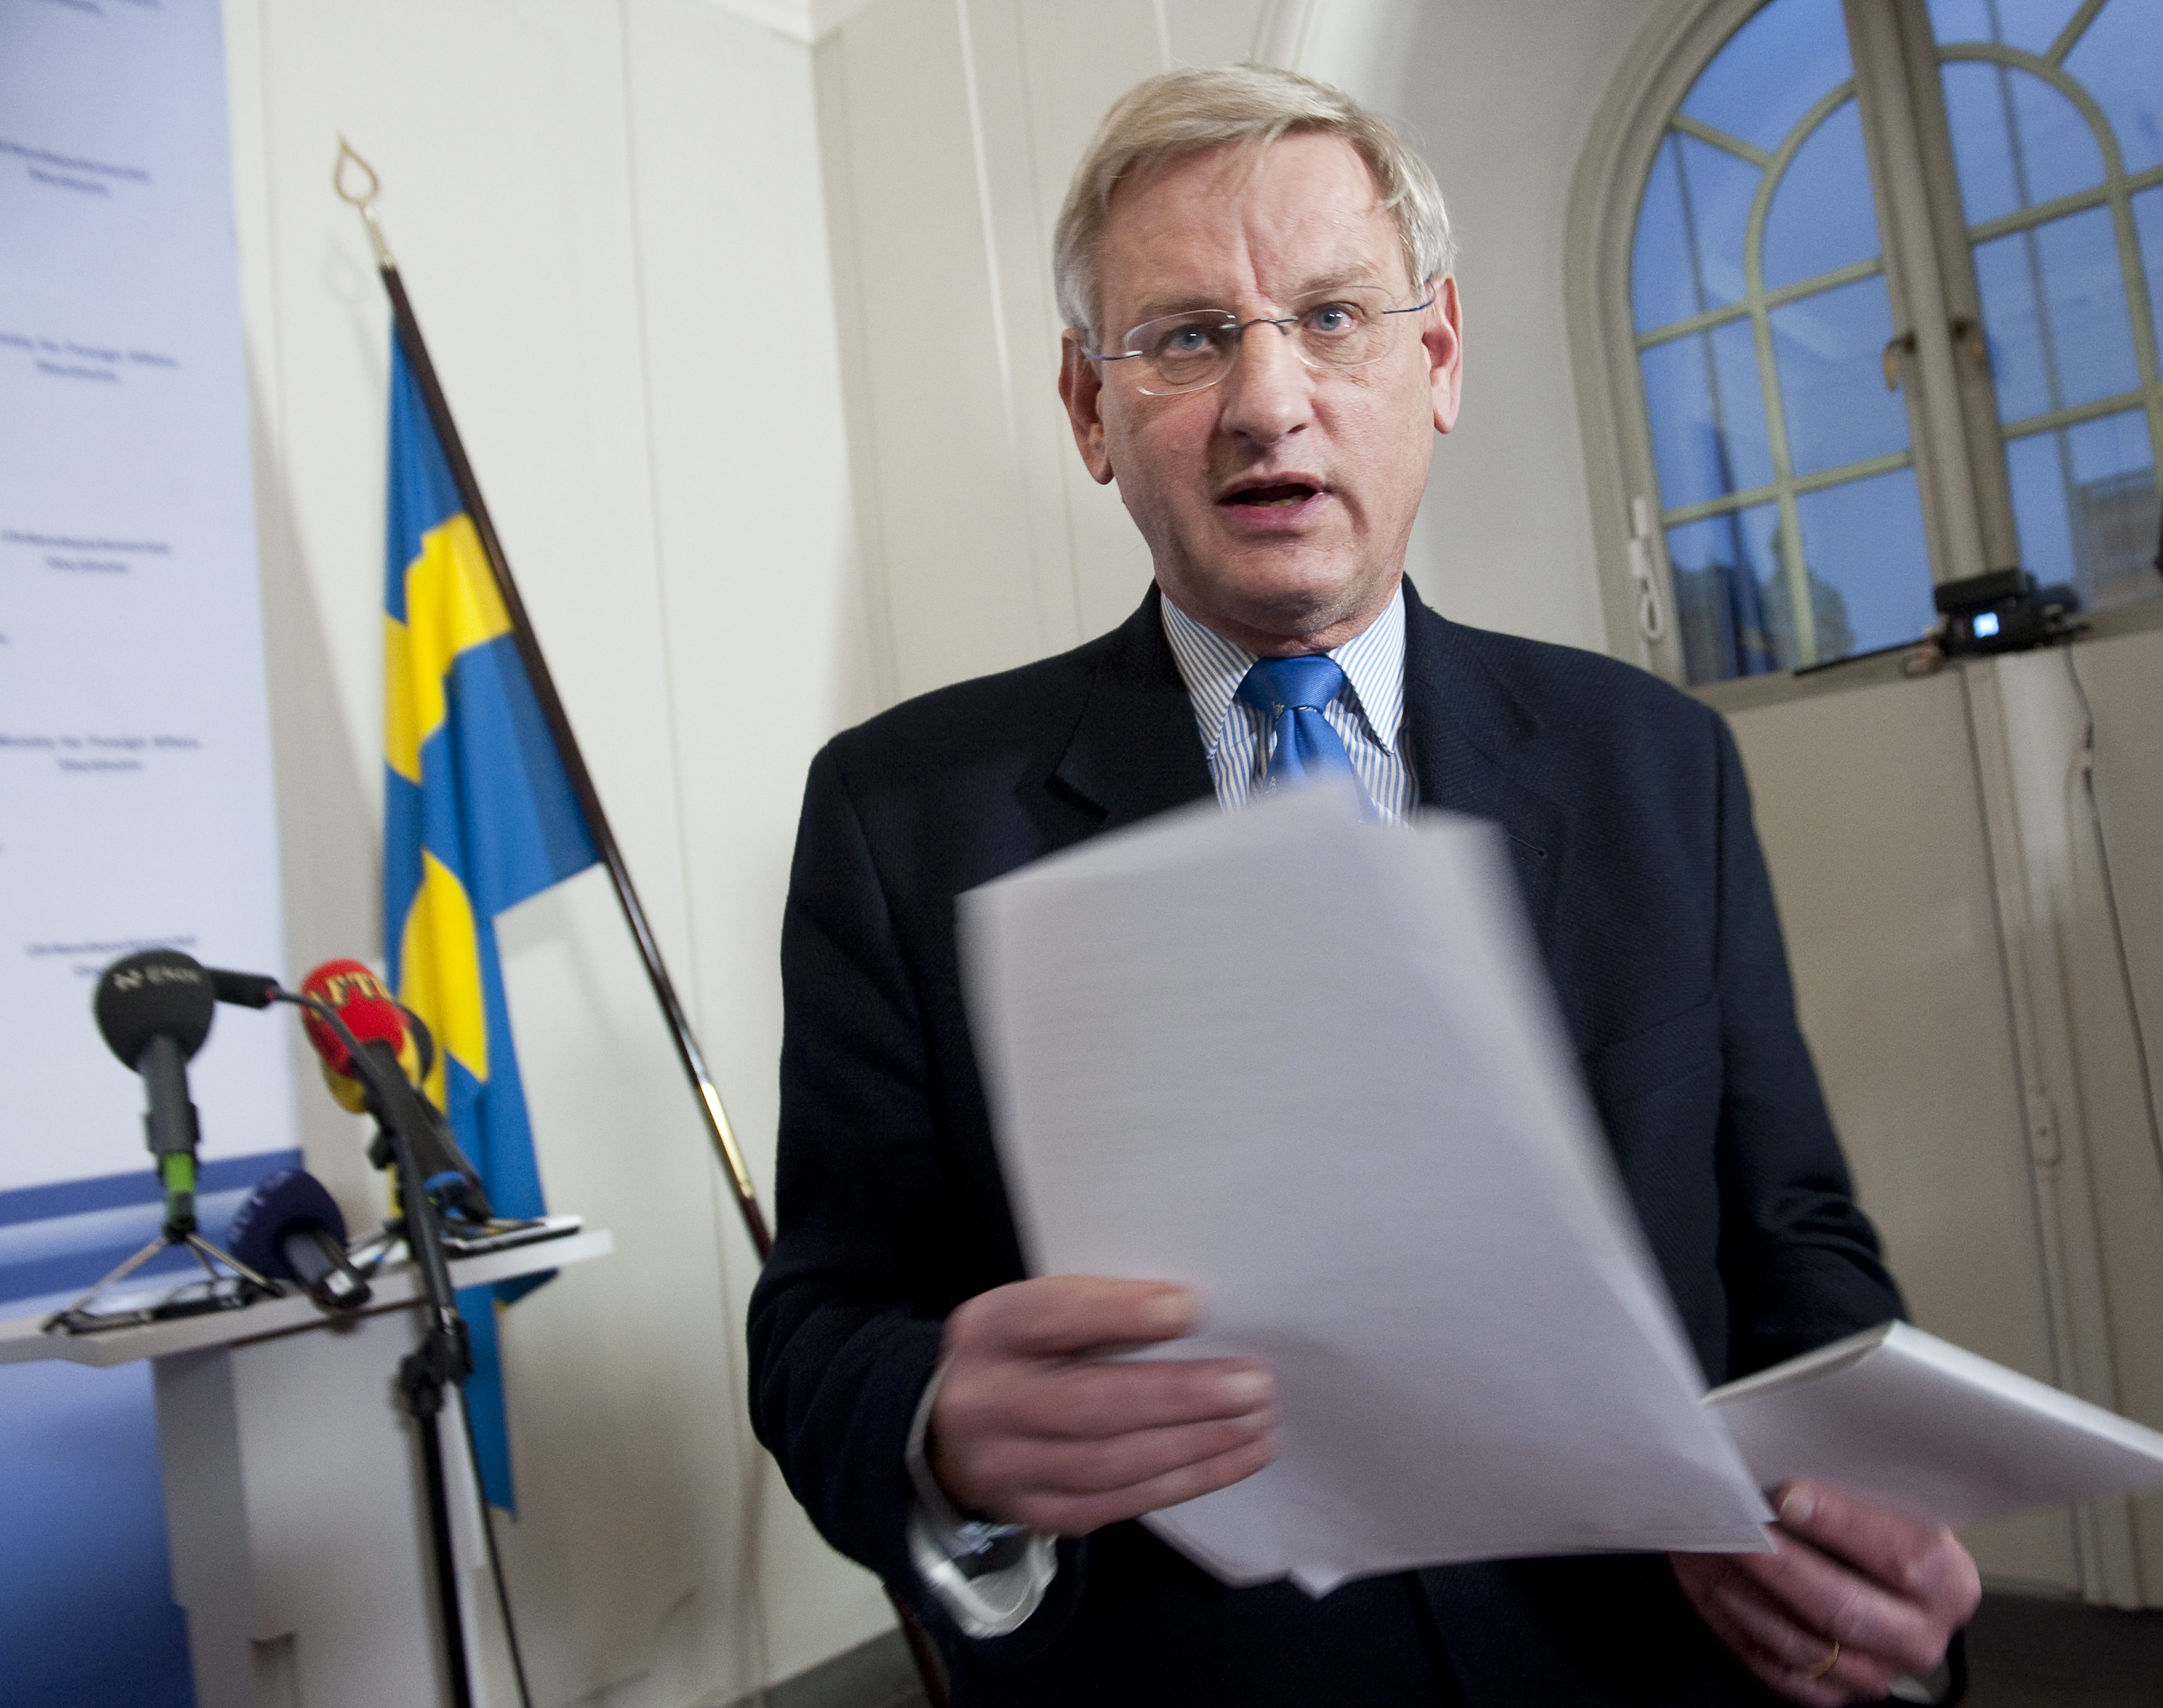 Det var första gången sedan de greps som utrikesministern Carl Bildt träffade journalisterna.